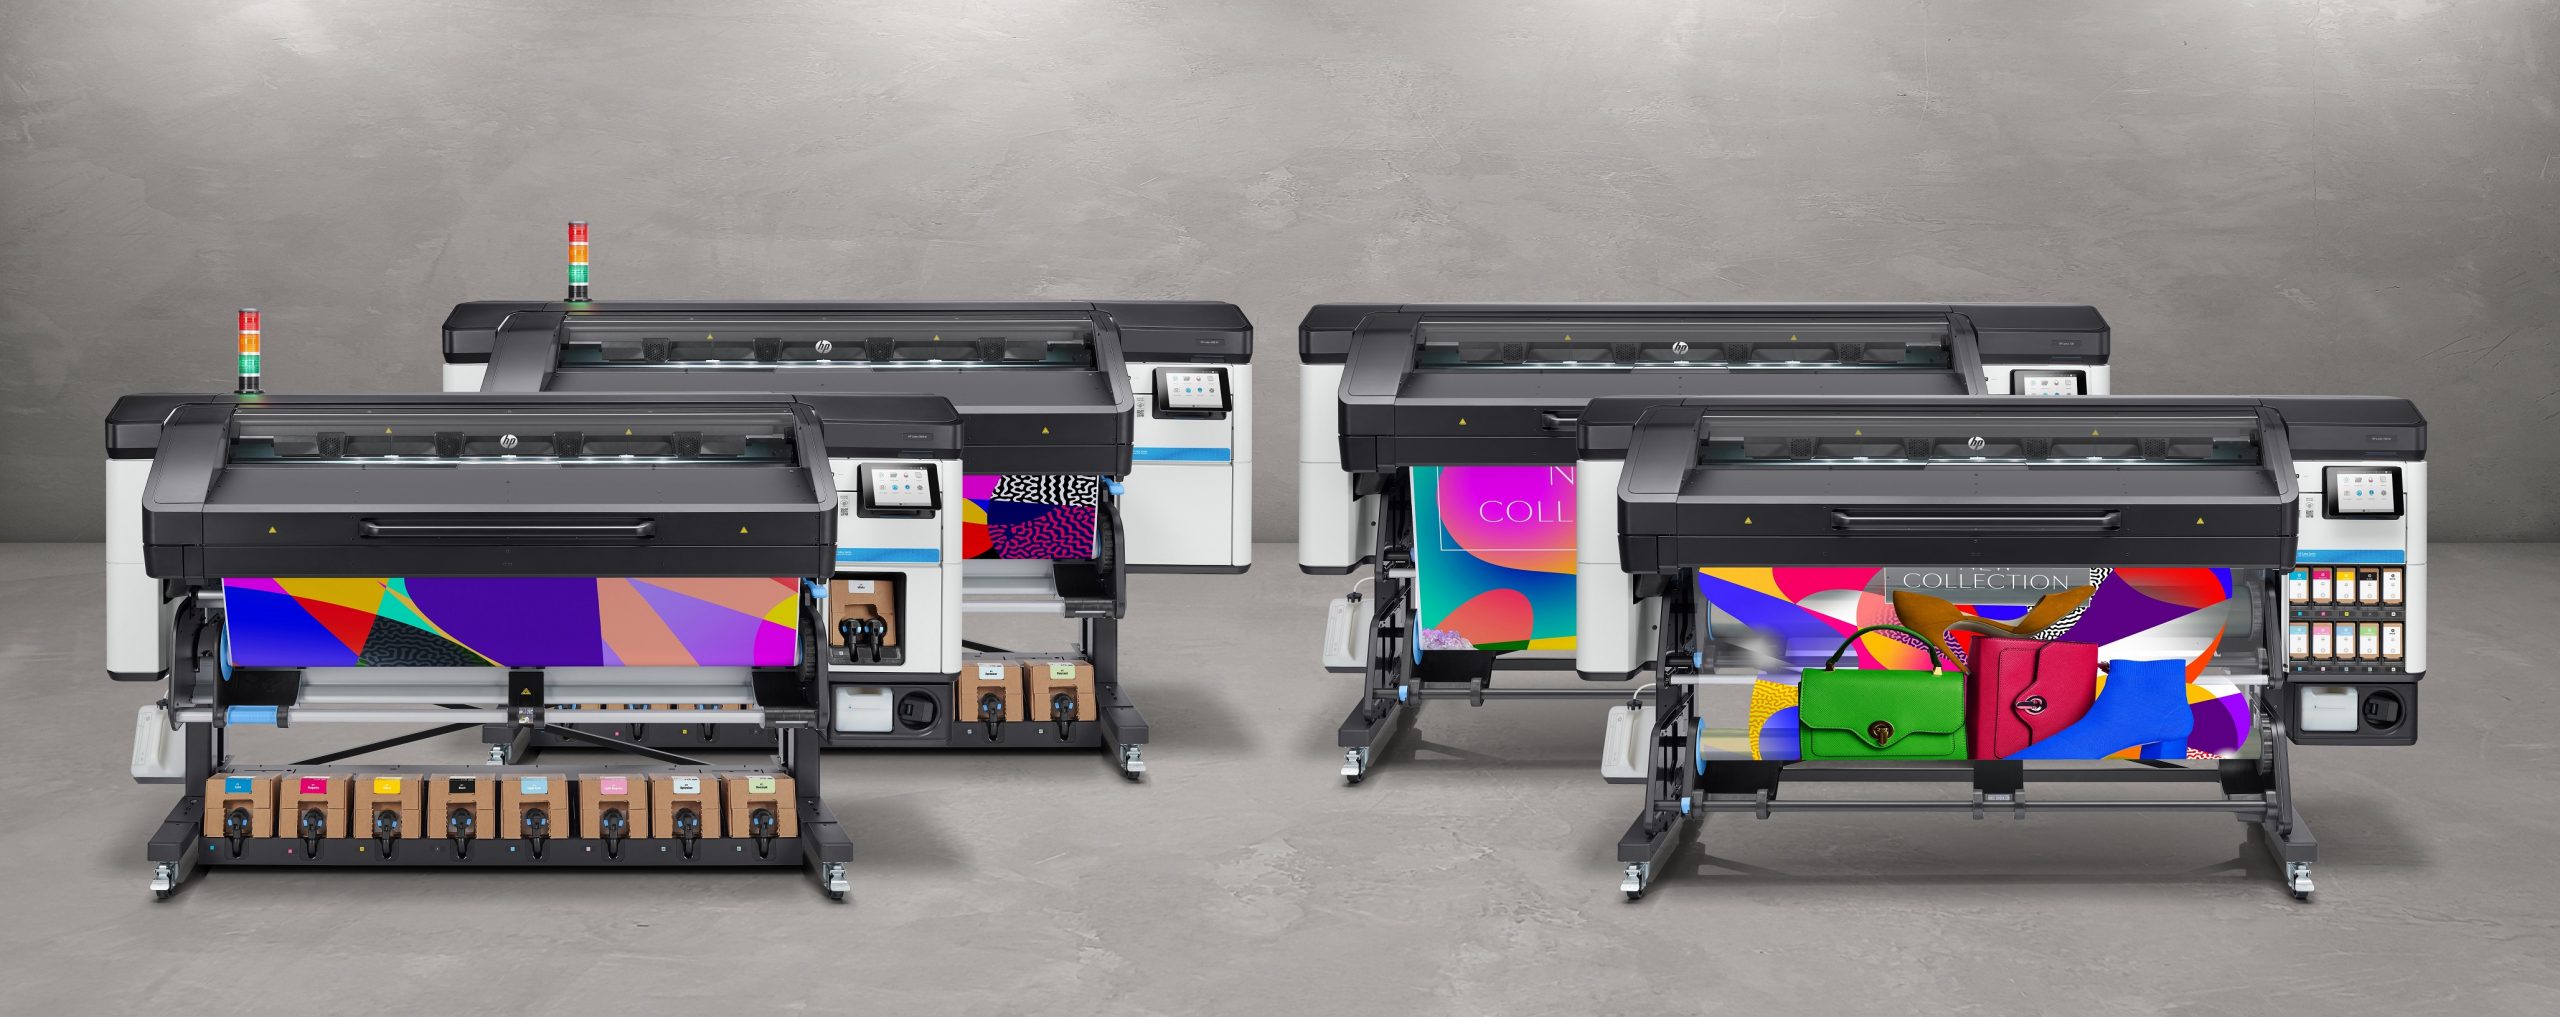 Family HP Latex 800 & 700 Printer series